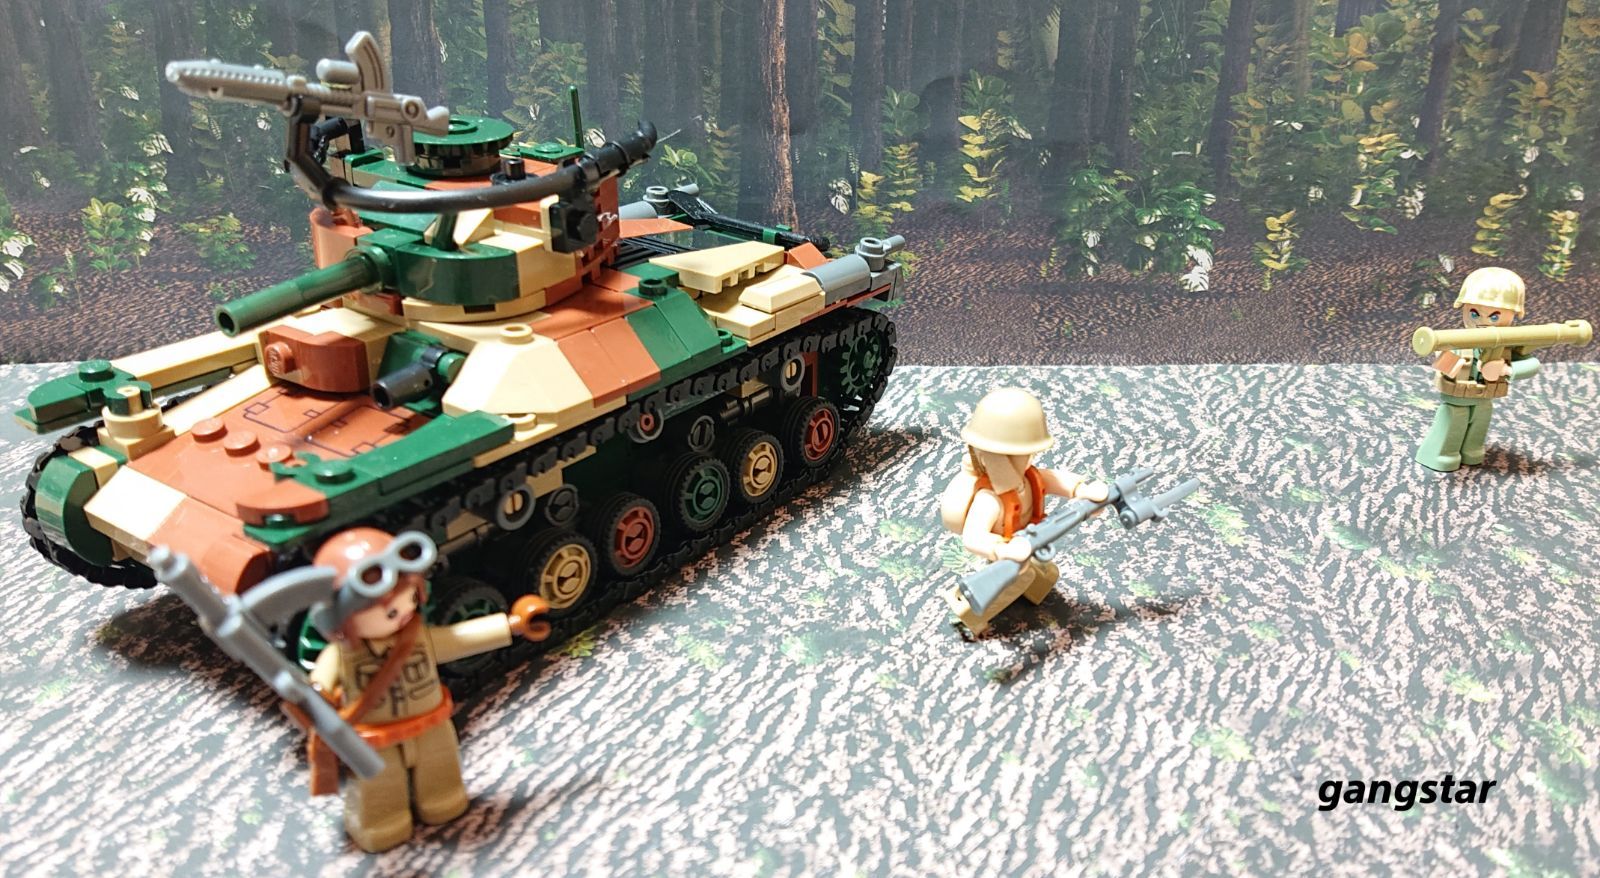 レゴ純正 Brickmania 旧日本軍 九七式中戦車 チハ ミリタリー - おもちゃ